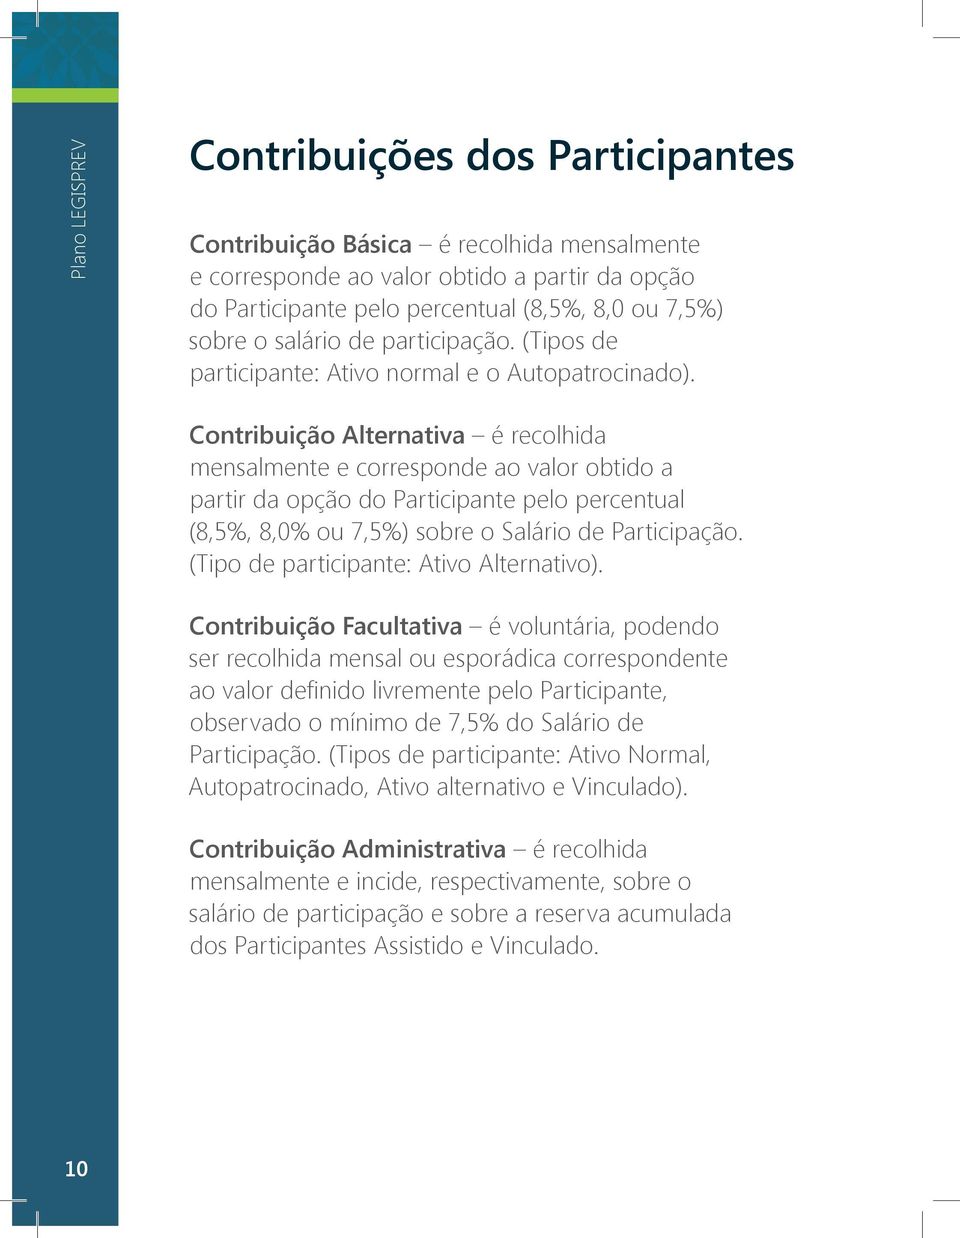 Contribuição Alternativa é recolhida mensalmente e corresponde ao valor obtido a partir da opção do Participante pelo percentual (8,5%, 8,0% ou 7,5%) sobre o Salário de Participação.